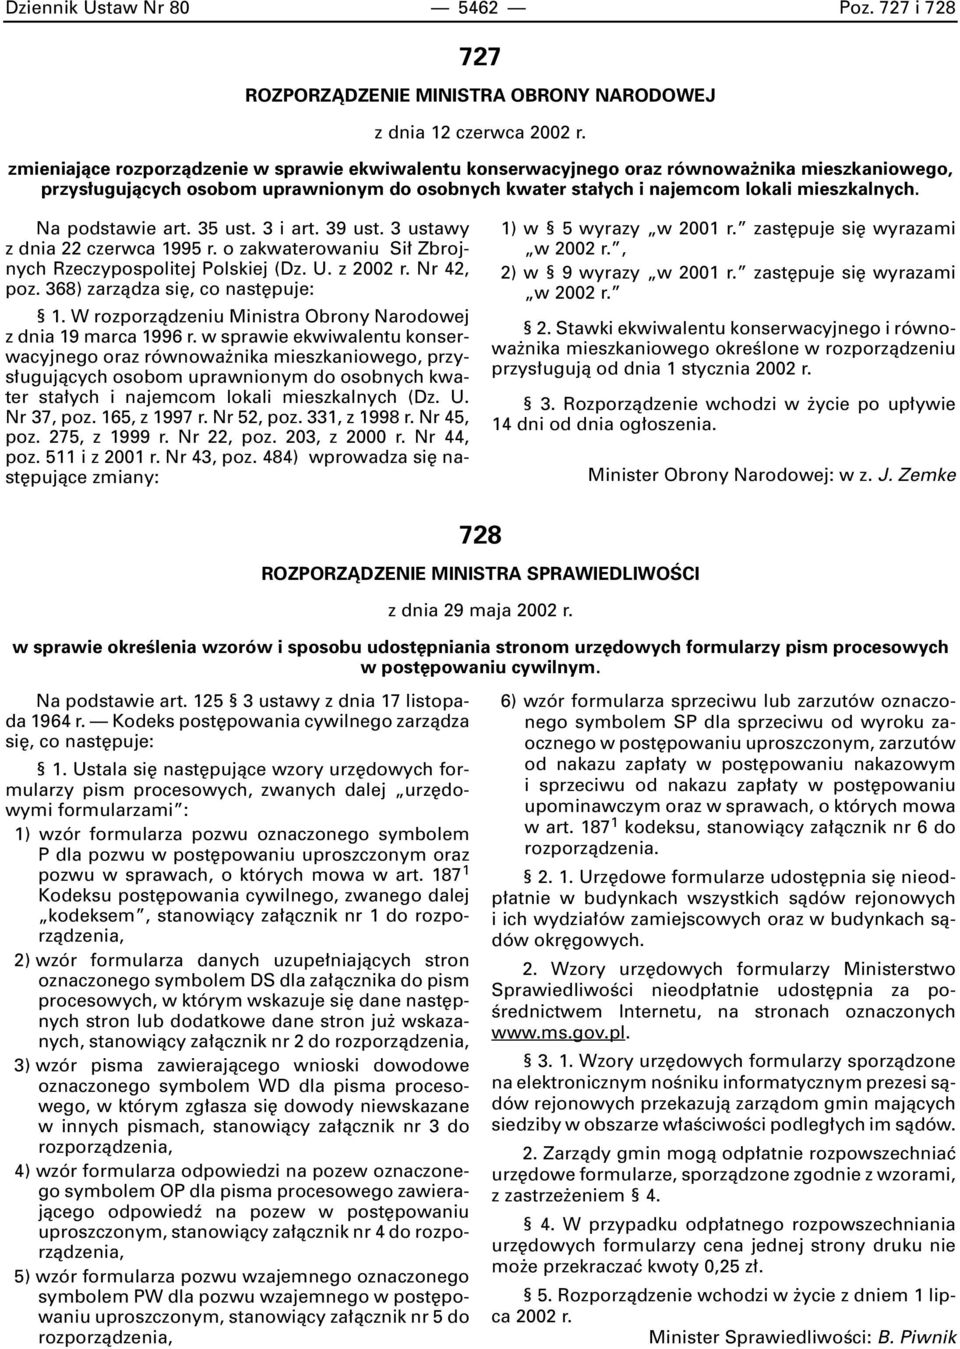 Na podstawie art. 35 ust. 3 i art. 39 ust. 3 ustawy z dnia 22 czerwca 1995 r. o zakwaterowaniu Si Zbrojnych Rzeczypospolitej Polskiej (Dz. U. z 2002 r. Nr 42, poz. 368) zarzàdza si, co nast puje: 1.